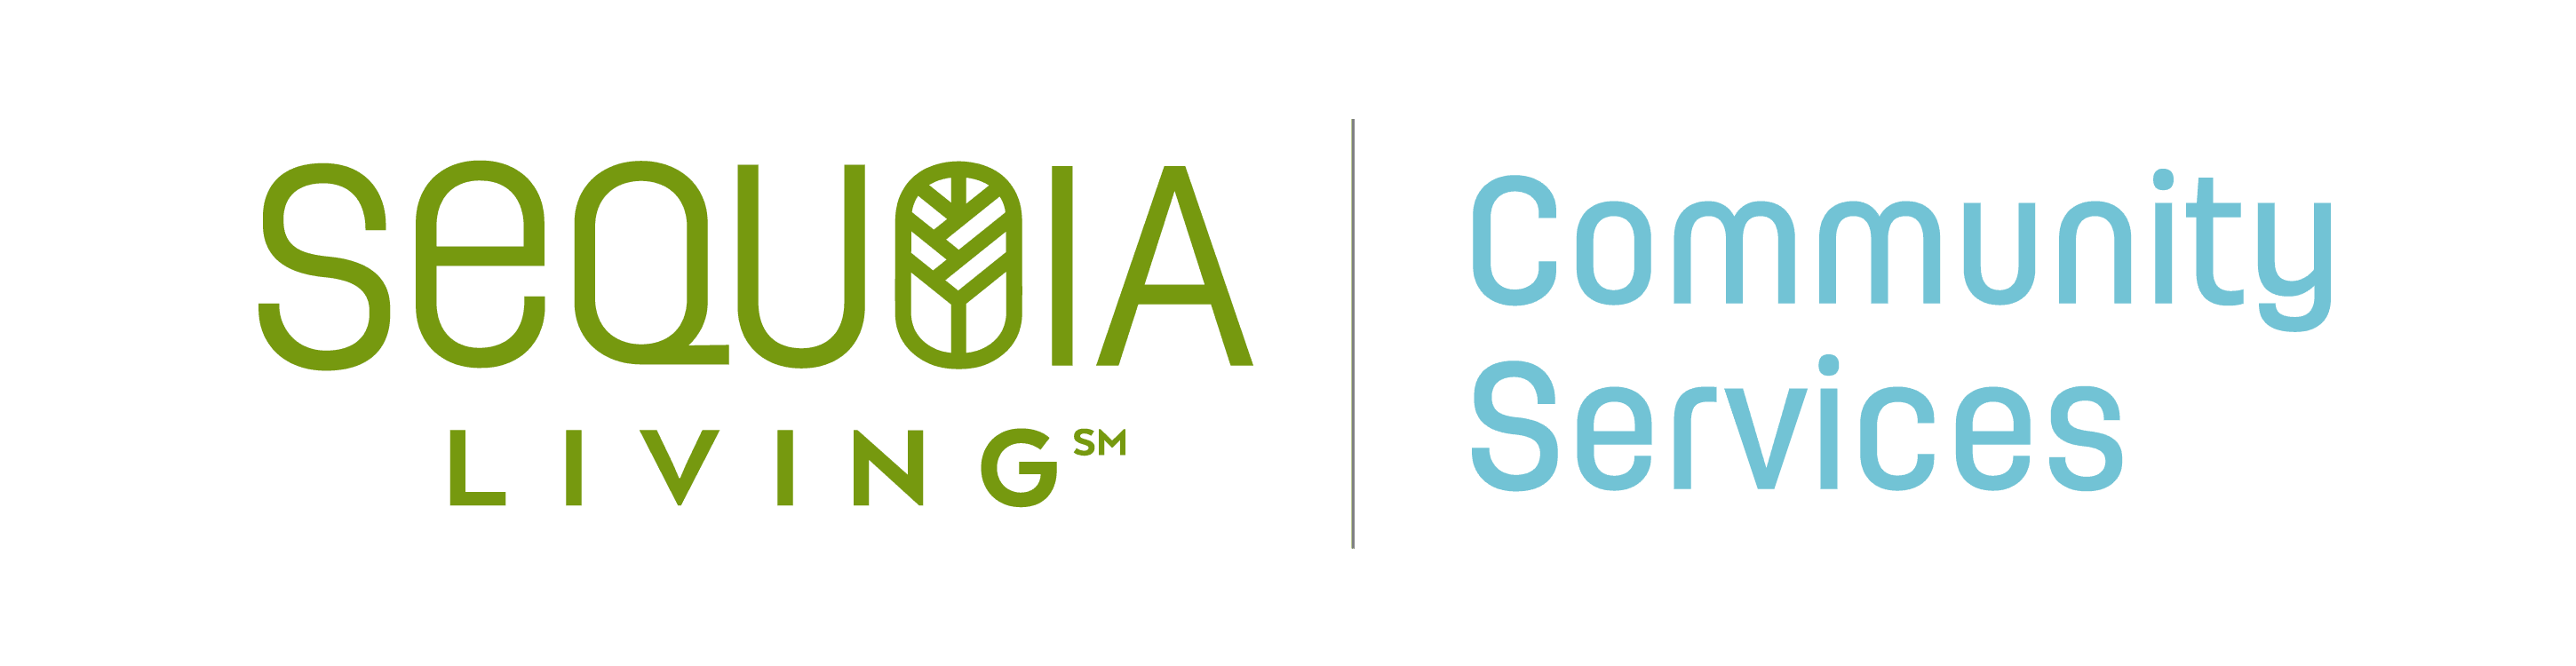 Sequoia Living - Community Services logo. Sequoia living. Community services.